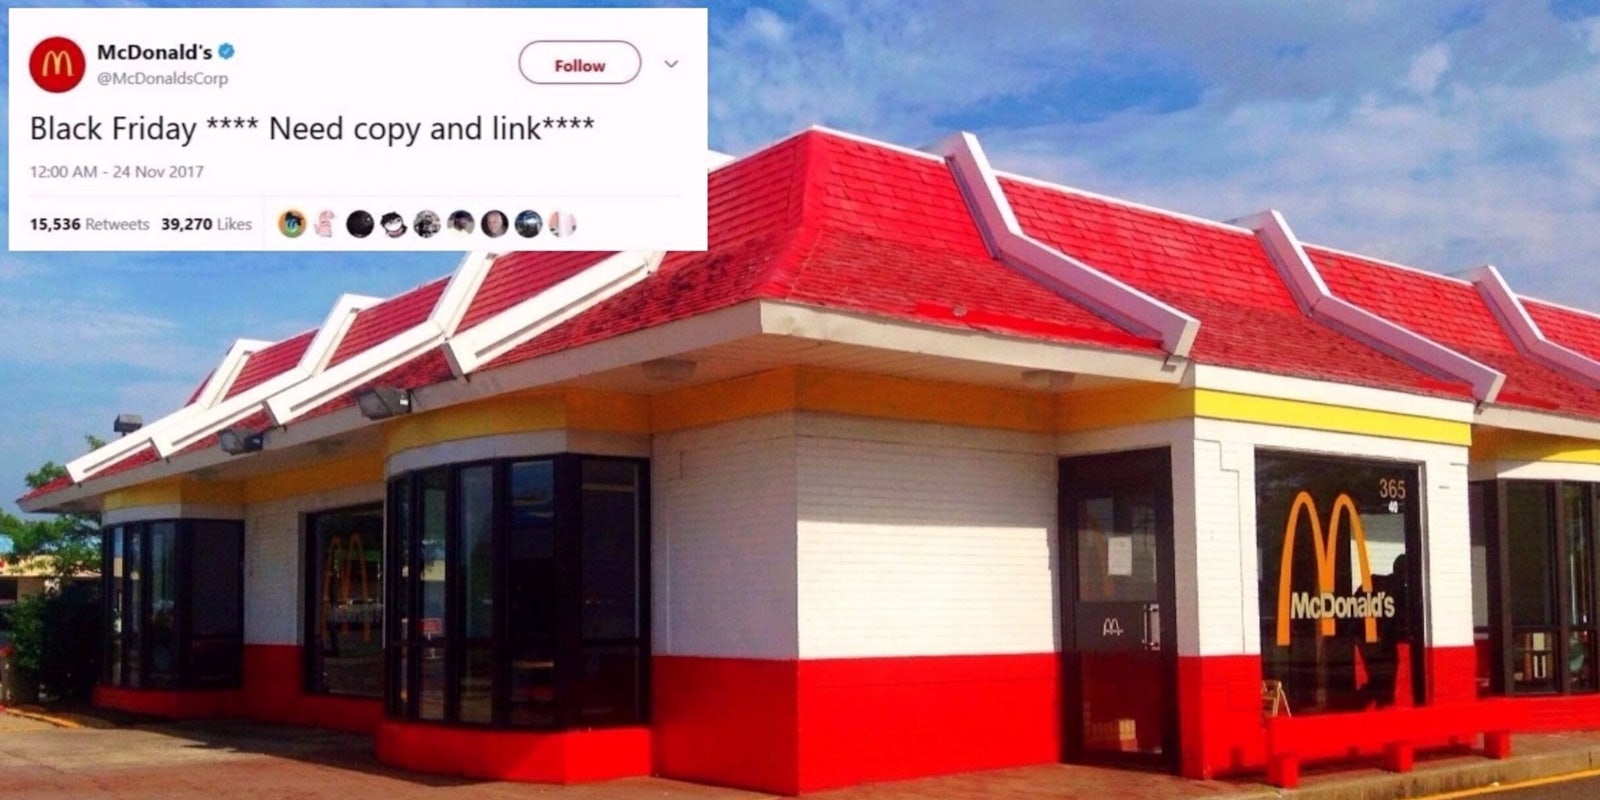 McDonald's Wendy's tweet